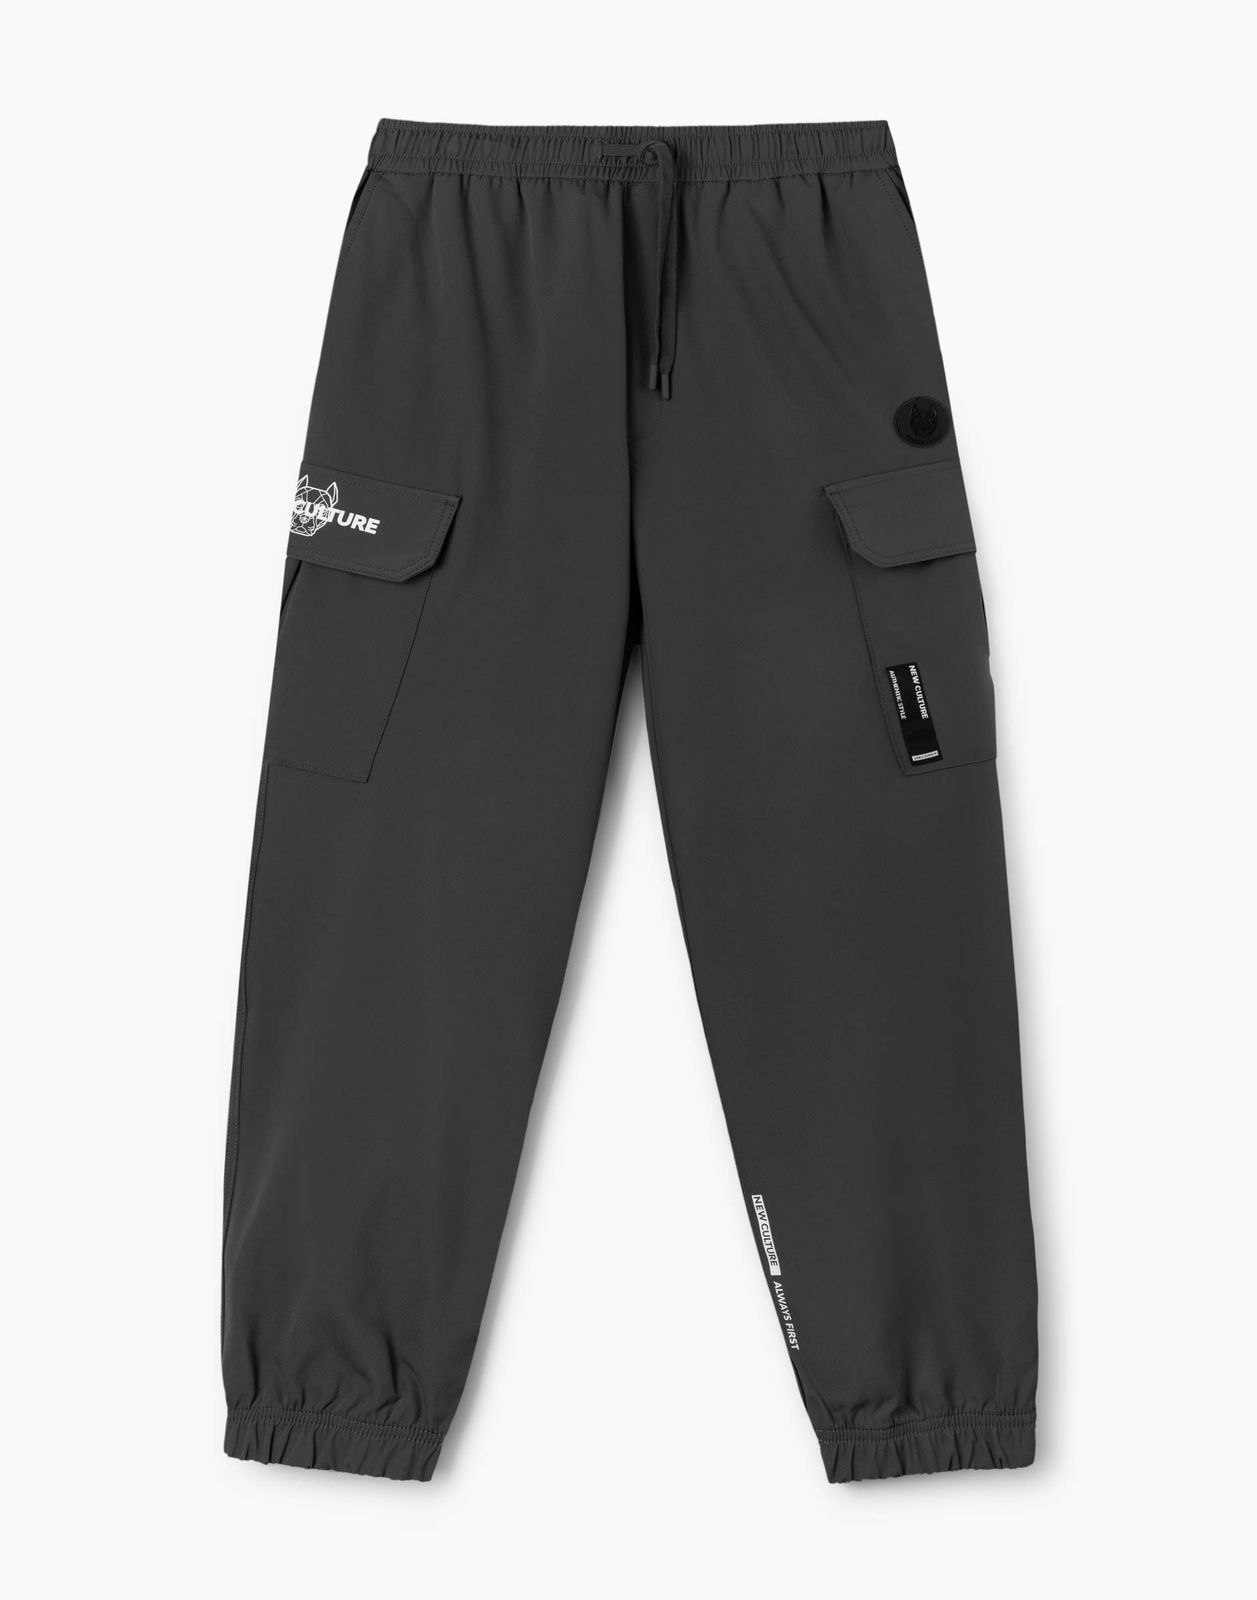 Спортивные брюки мужские Gloria Jeans BJN013817 серые XL/182 (52-54)